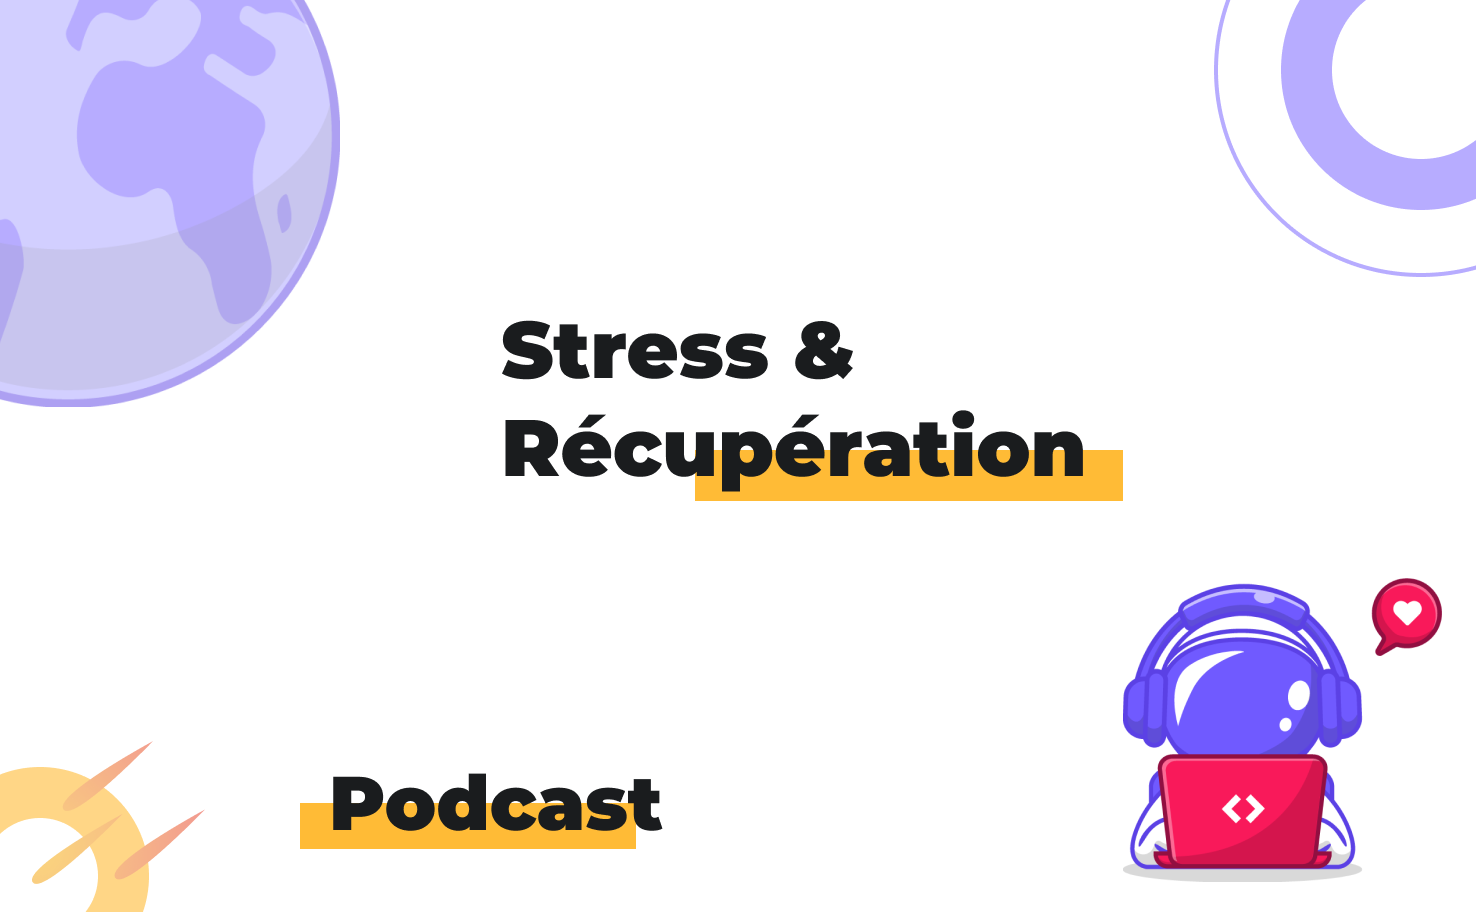 L'image affiche le sujet du podcast: Stress & récupération